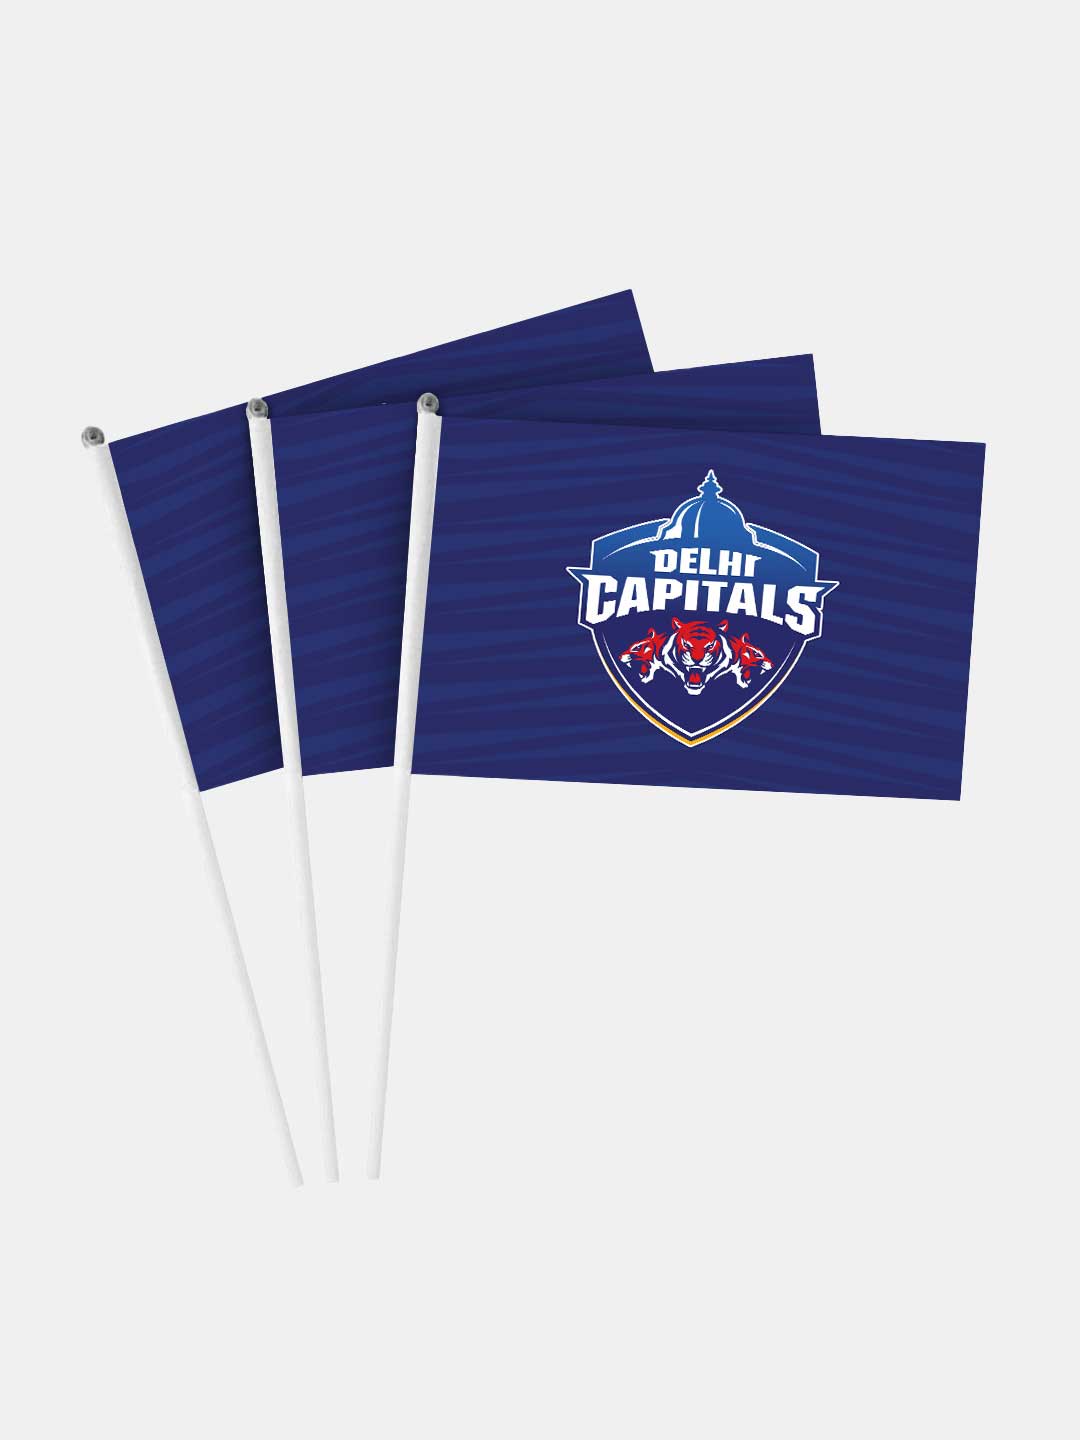 Buy Delhi Capitals - Flags Flags Online